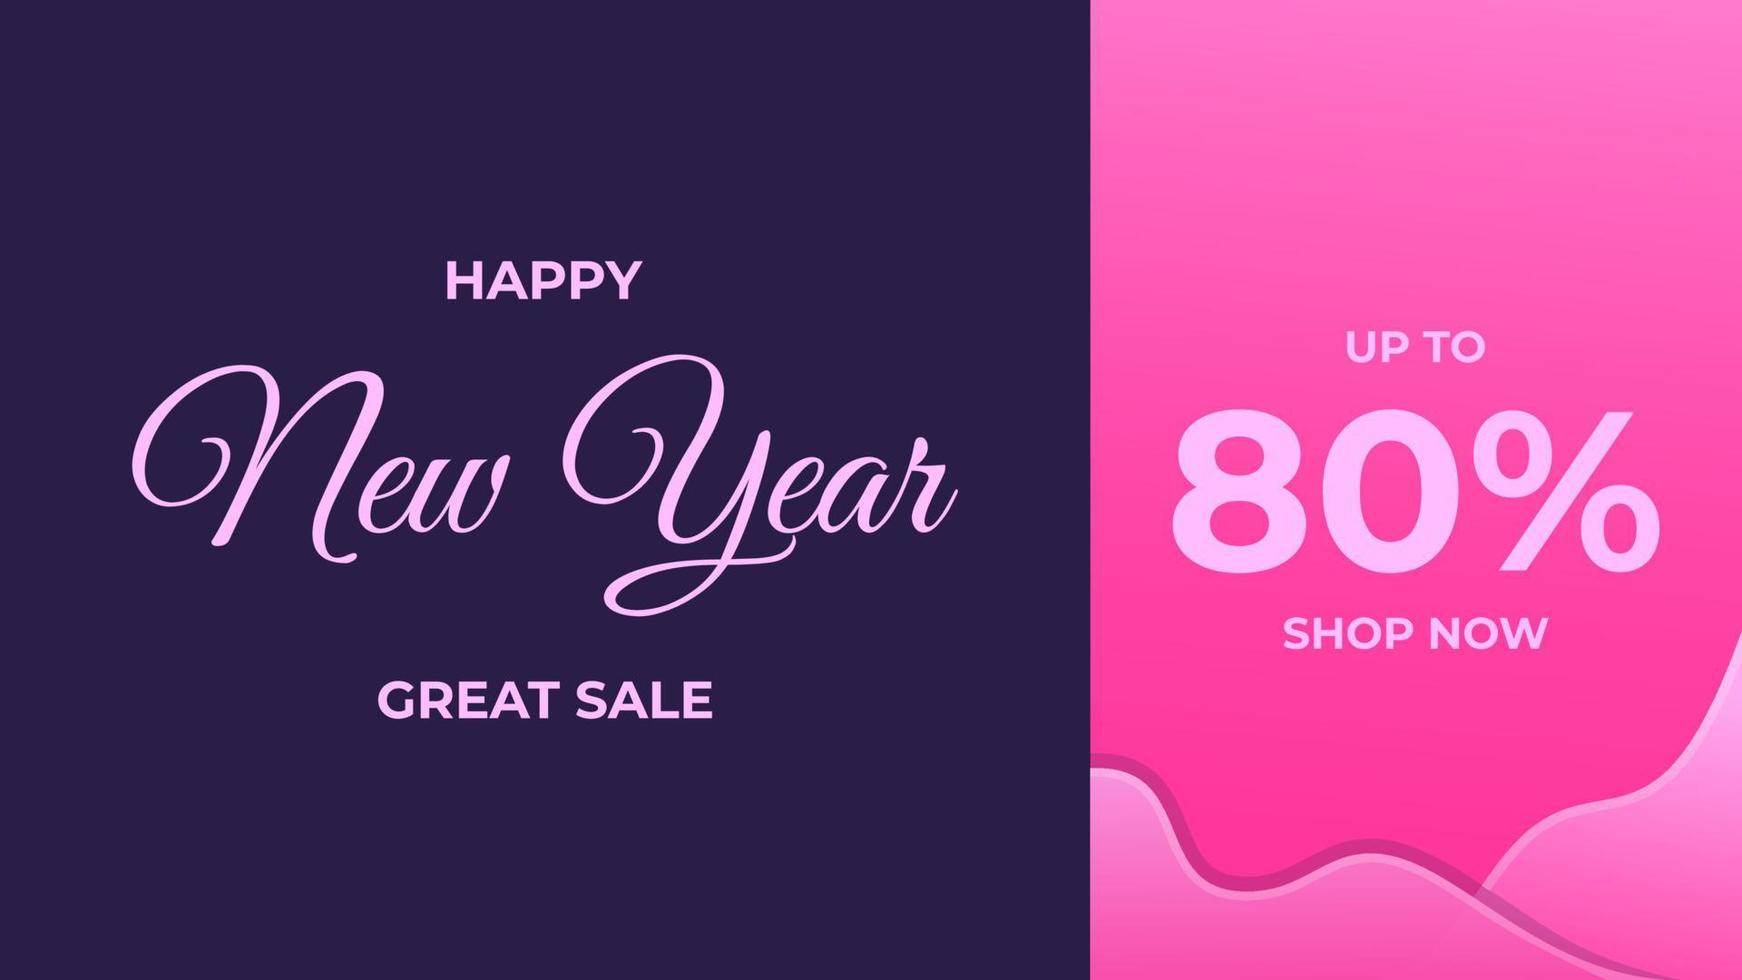 diseño de banner de gran venta de año nuevo, adecuado para usar en el evento de año nuevo vector